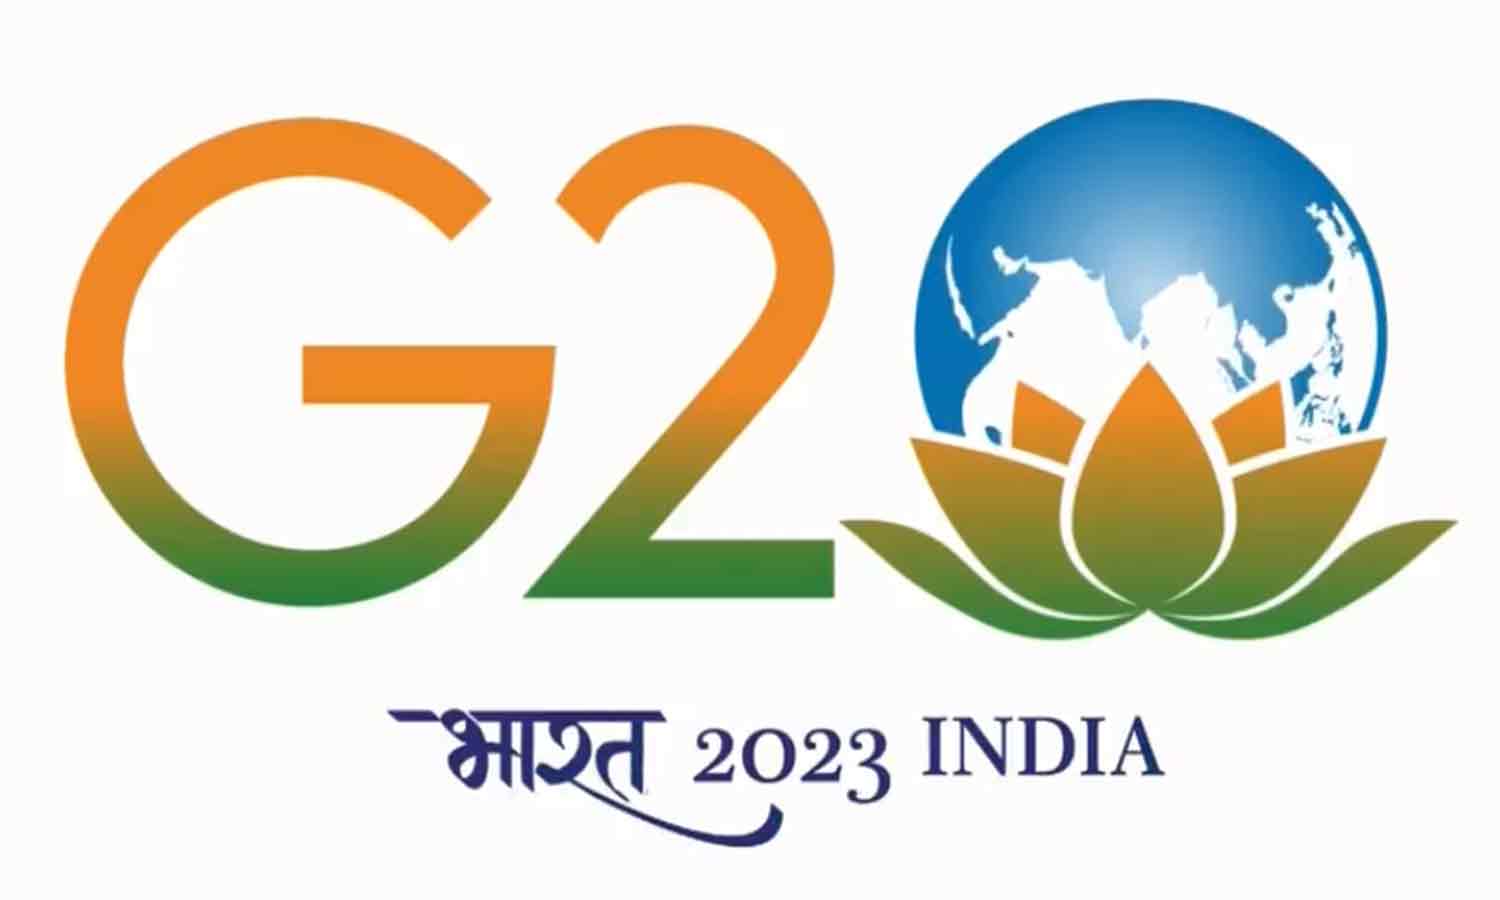 ஜி20 அமைப்புக்கு தலைமை ஏற்கிறது இந்தியா... லோகோ, இணையதளத்தை வெளியிட்டார்  பிரதமர் மோடி | Prime Minister Narendra Modi unveils the logo, theme and  website of India's G20 Presidency